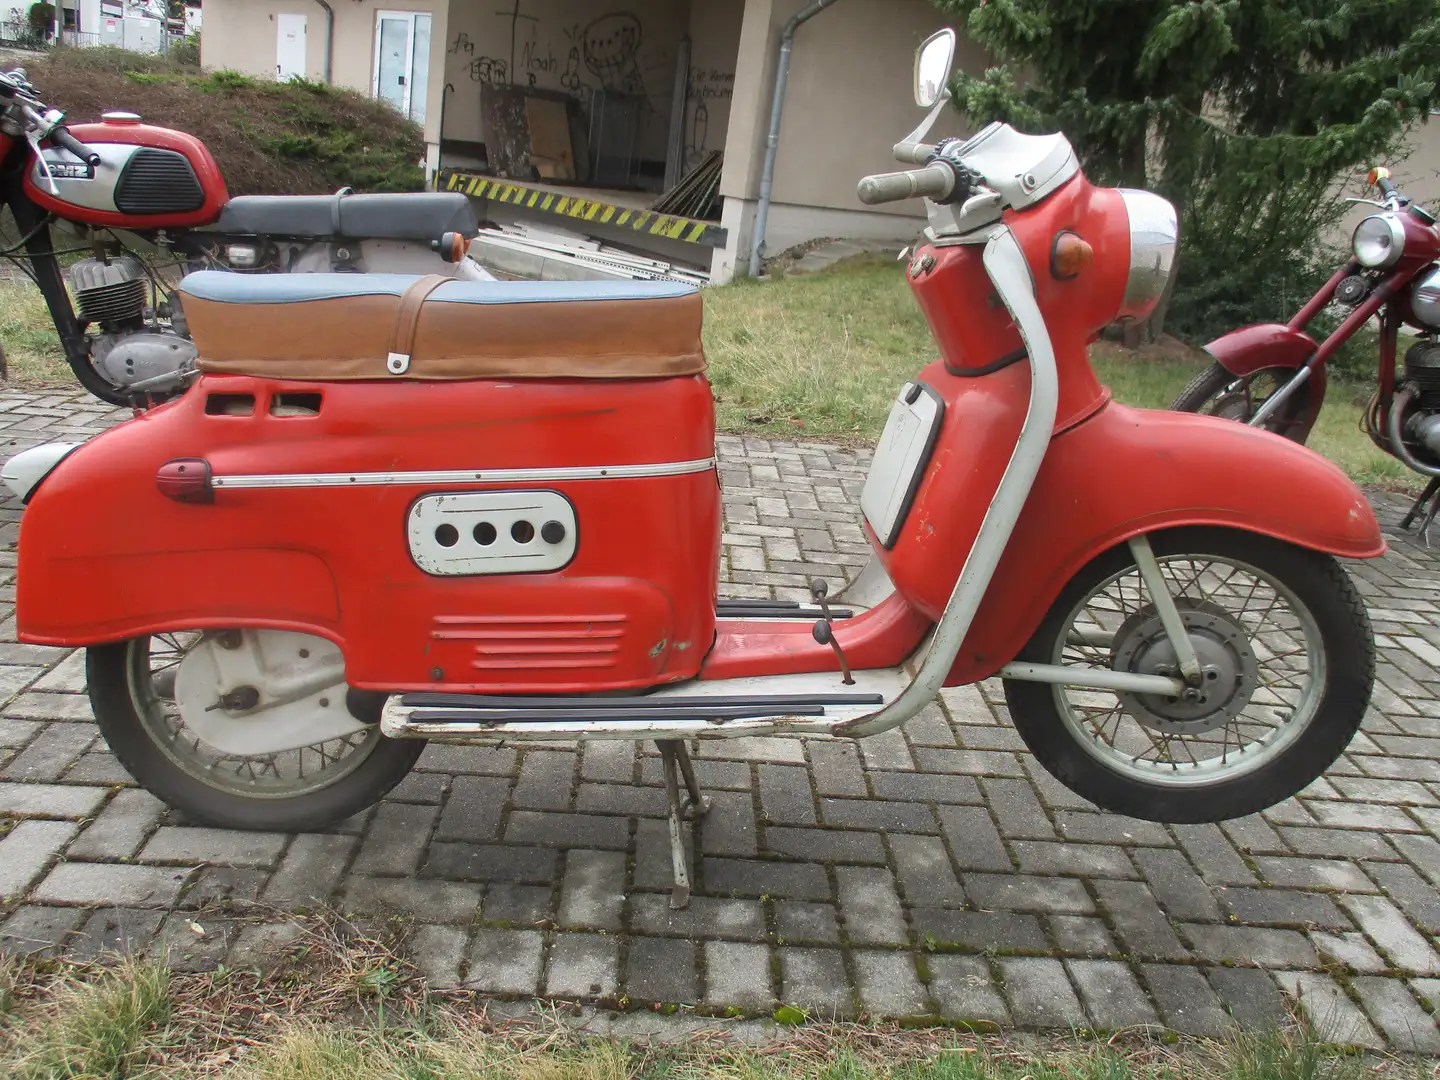 Jawa Tatran Roller Roller/Scooter in Rot gebraucht in Calau für € 3.000,-